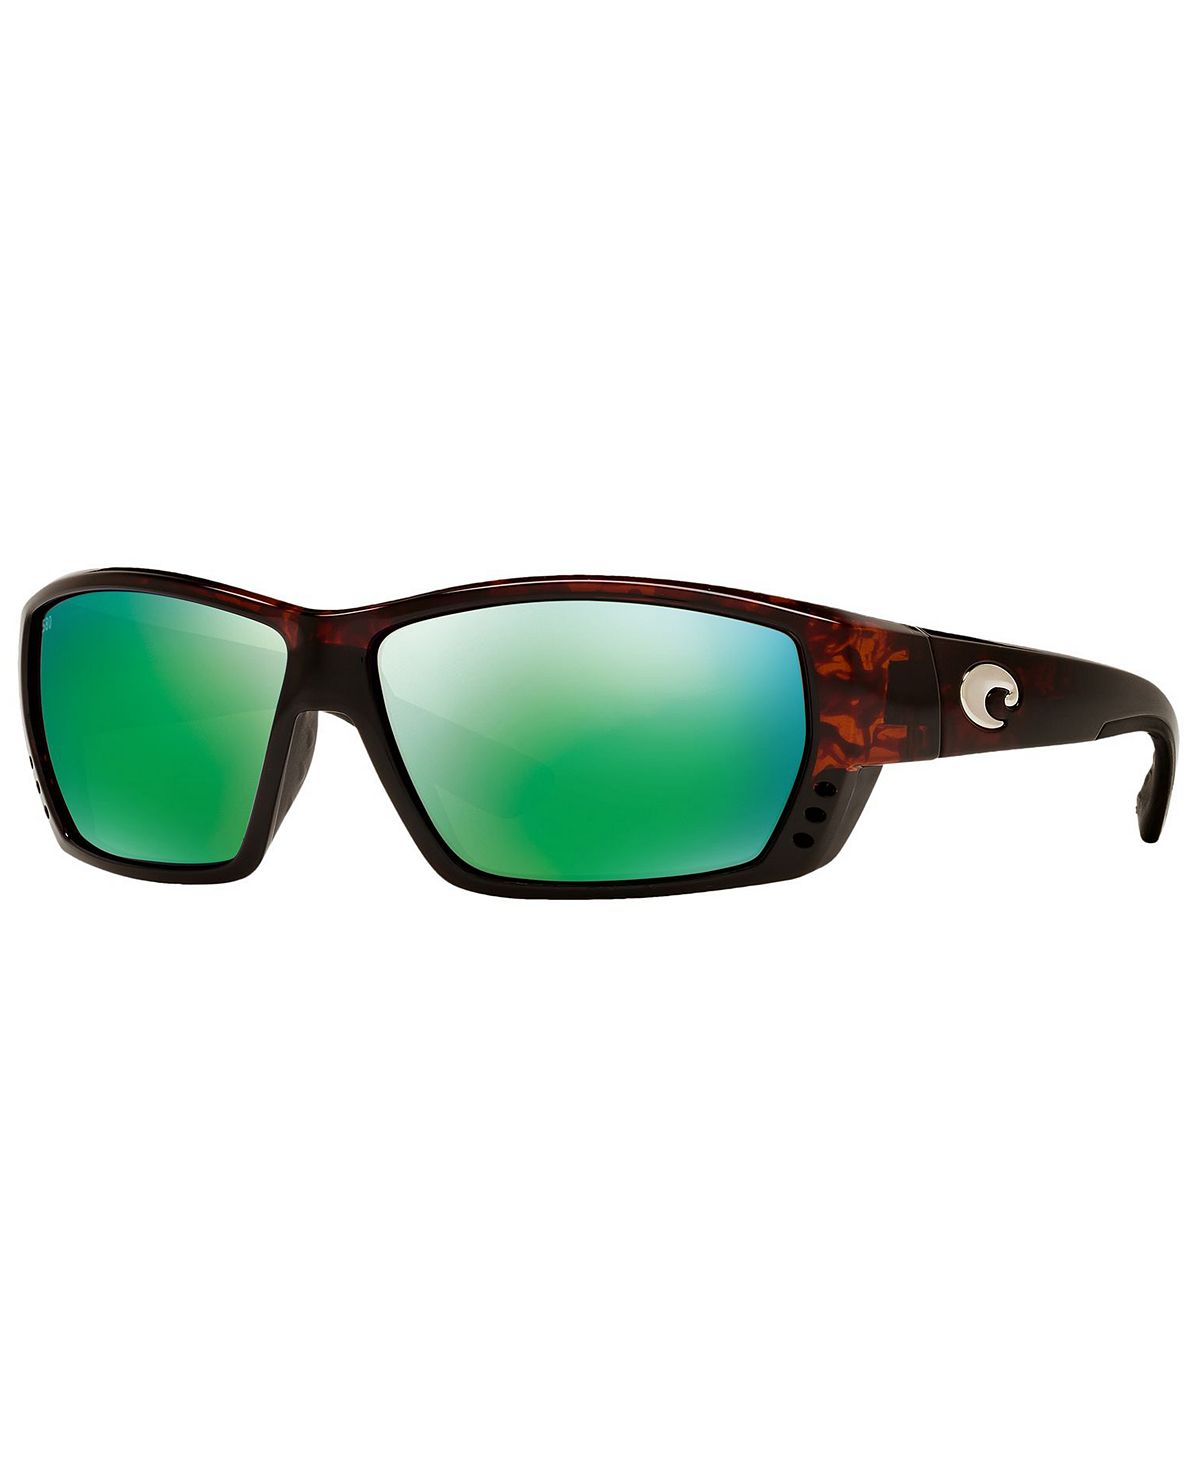 Мужские поляризованные солнцезащитные очки, Tuna Alley Costa Del Mar поляризованные солнцезащитные очки tuna alley costa del mar